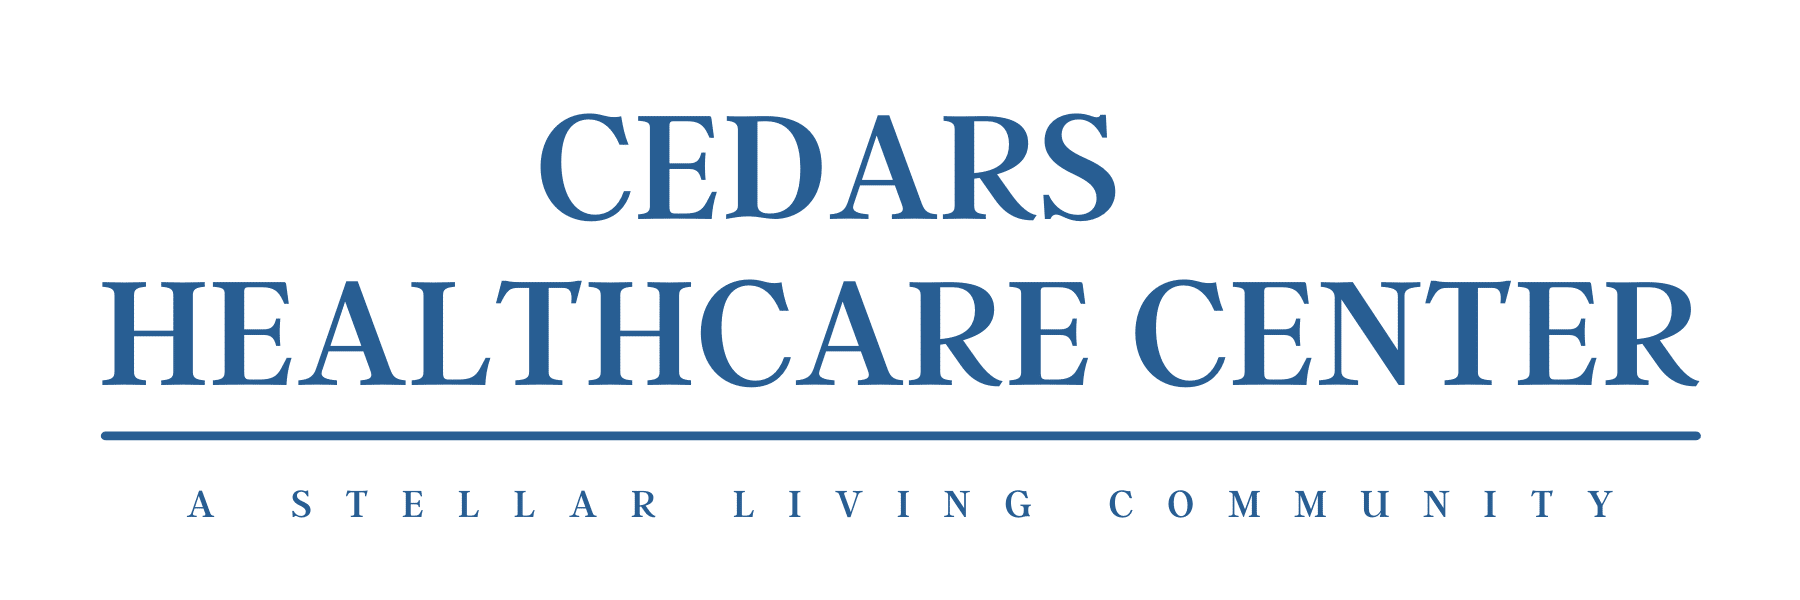 Cedars Healthcare Center Logo